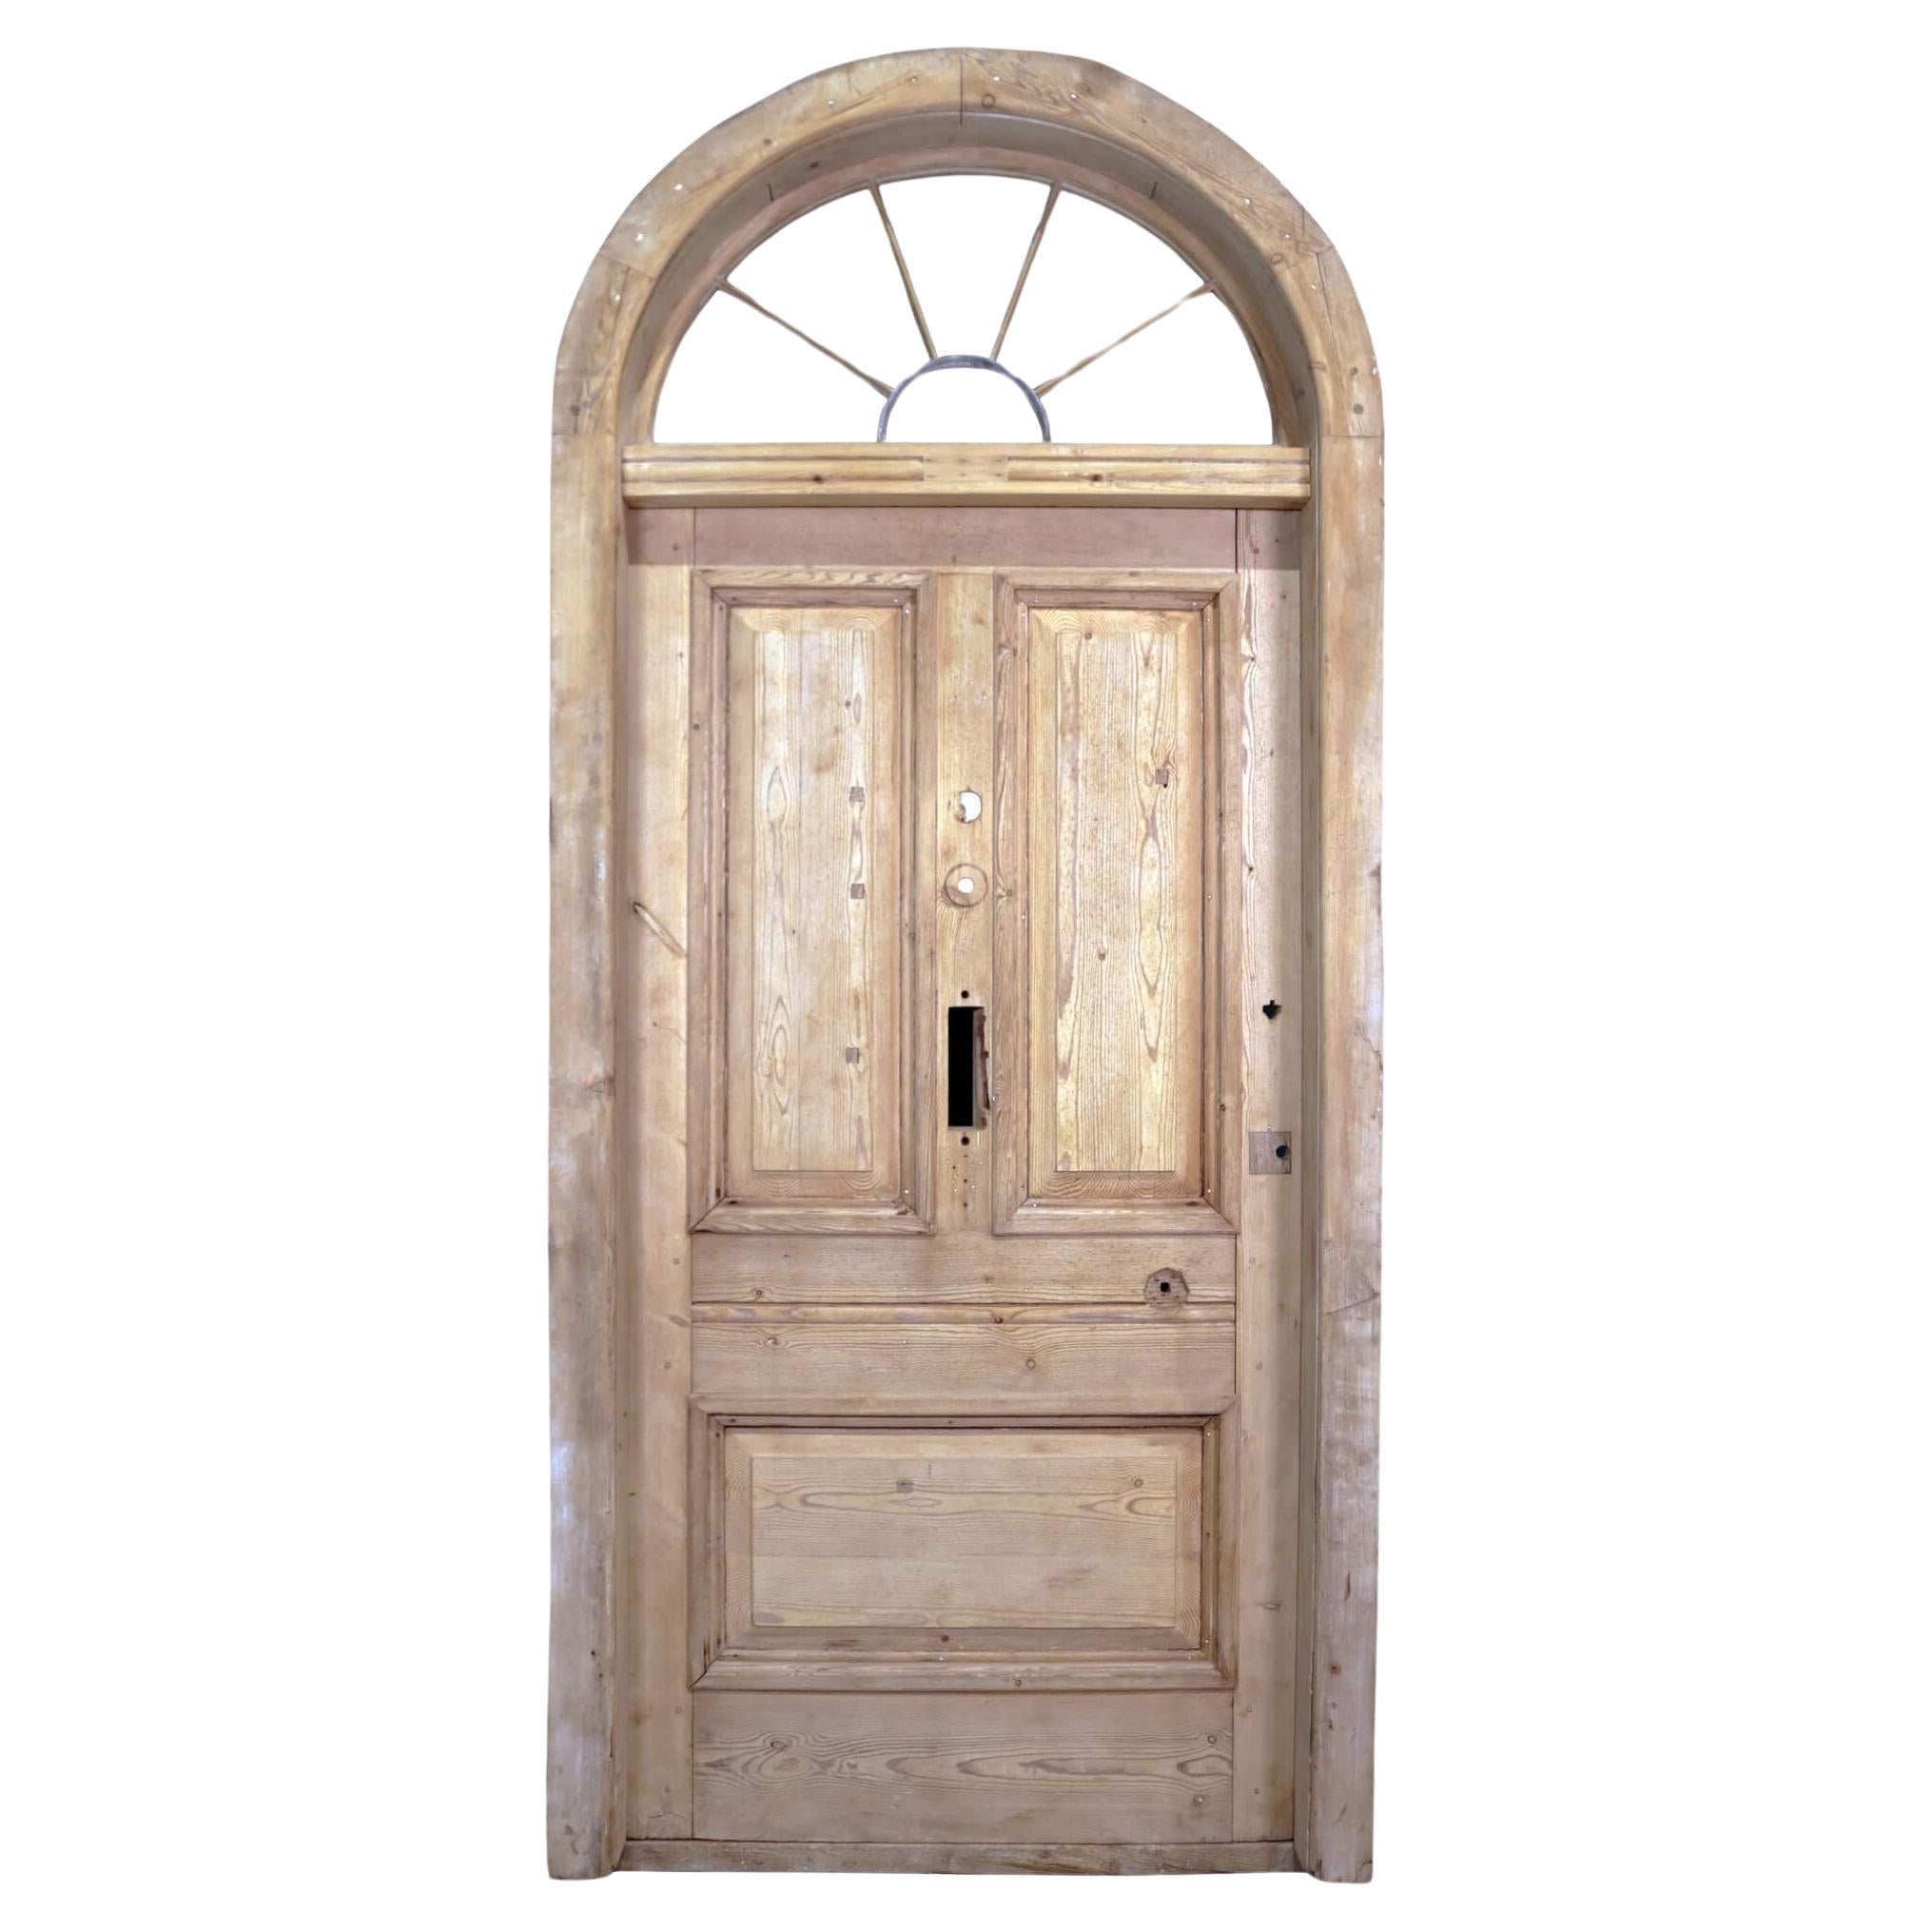 Reclaimed Georgian Front Door with Fanlight For Sale